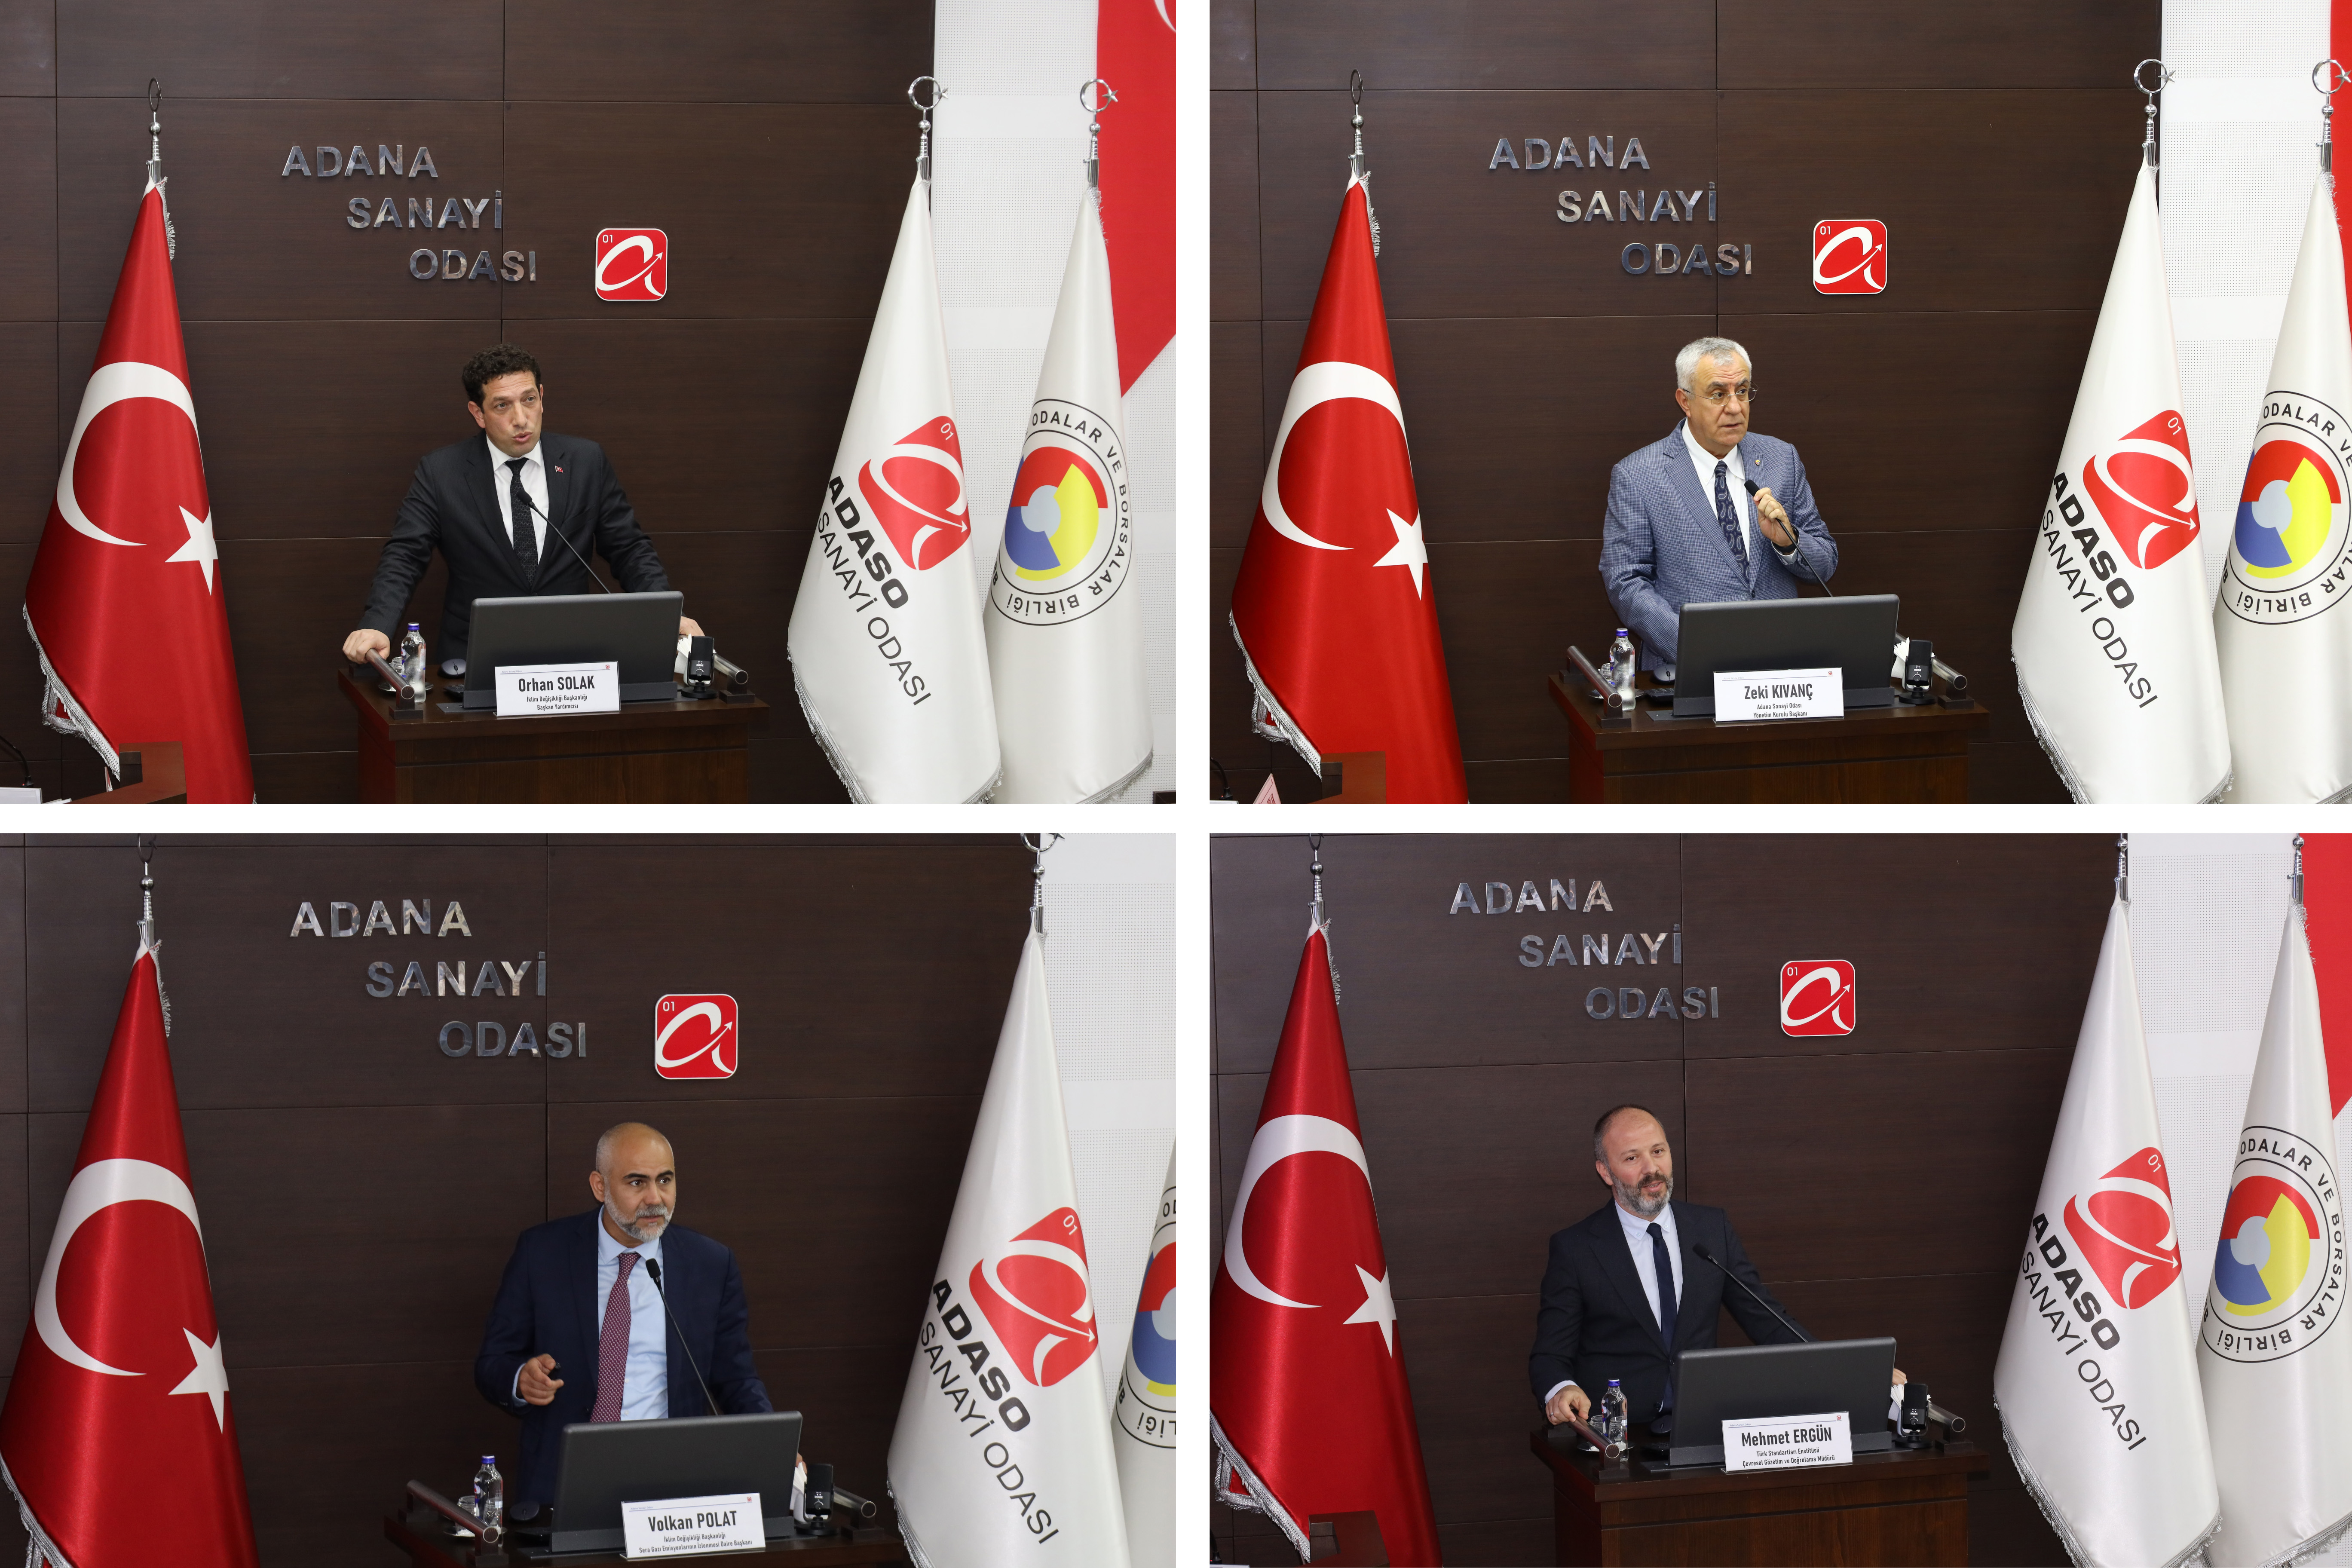 Yeşil Dönüşüm ve Sınırda Karbon Düzenleme Mekanizması Bilgilendirme ve İstişare Toplantısı Adana’da gerçekleştirildi